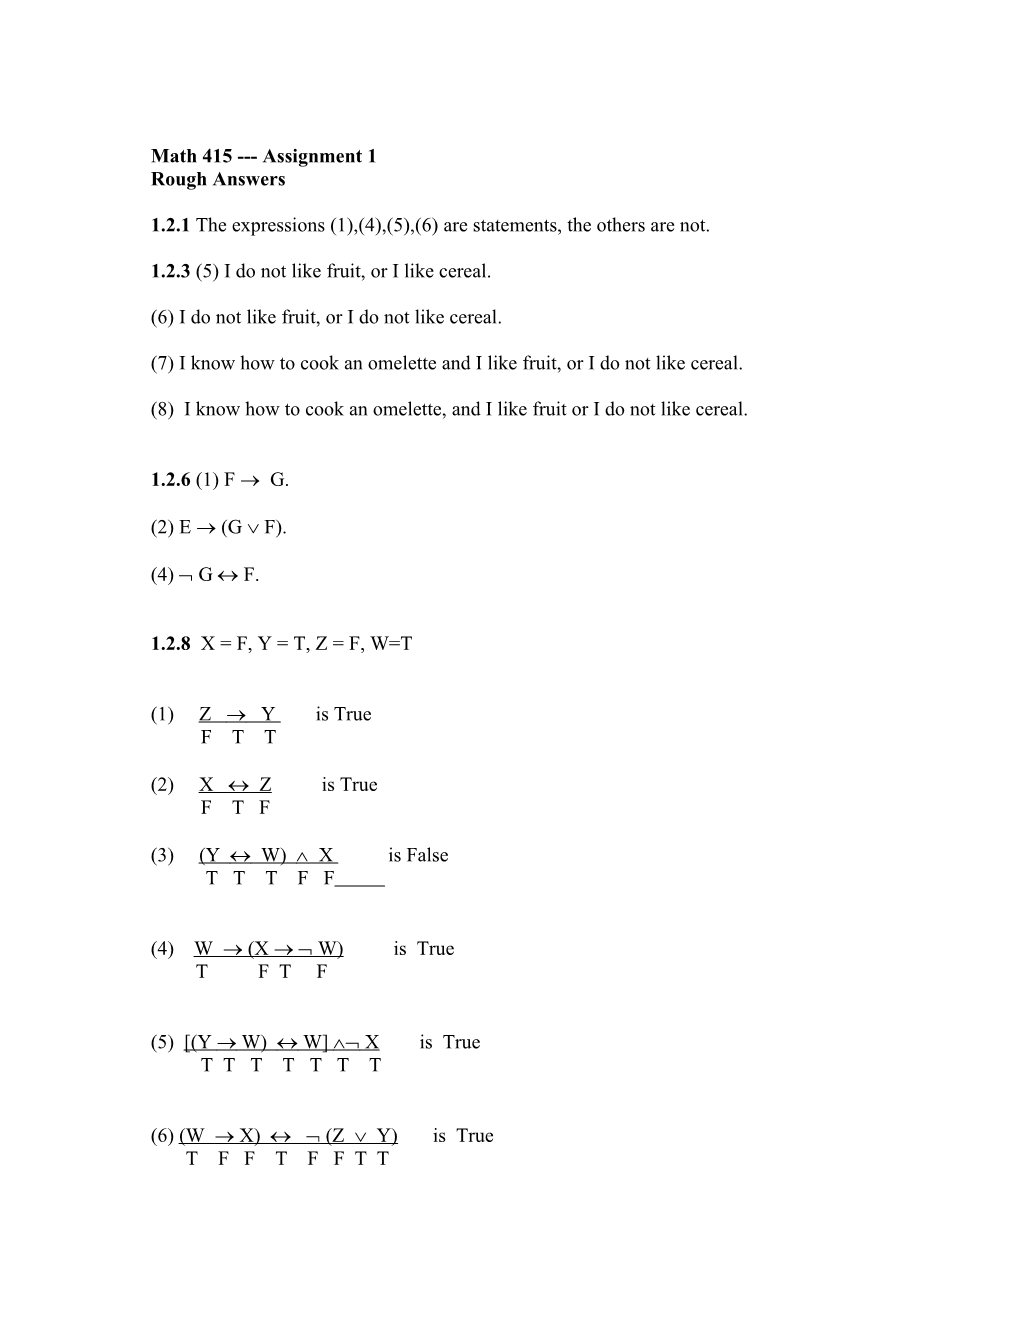 Math 415 Assignment 1